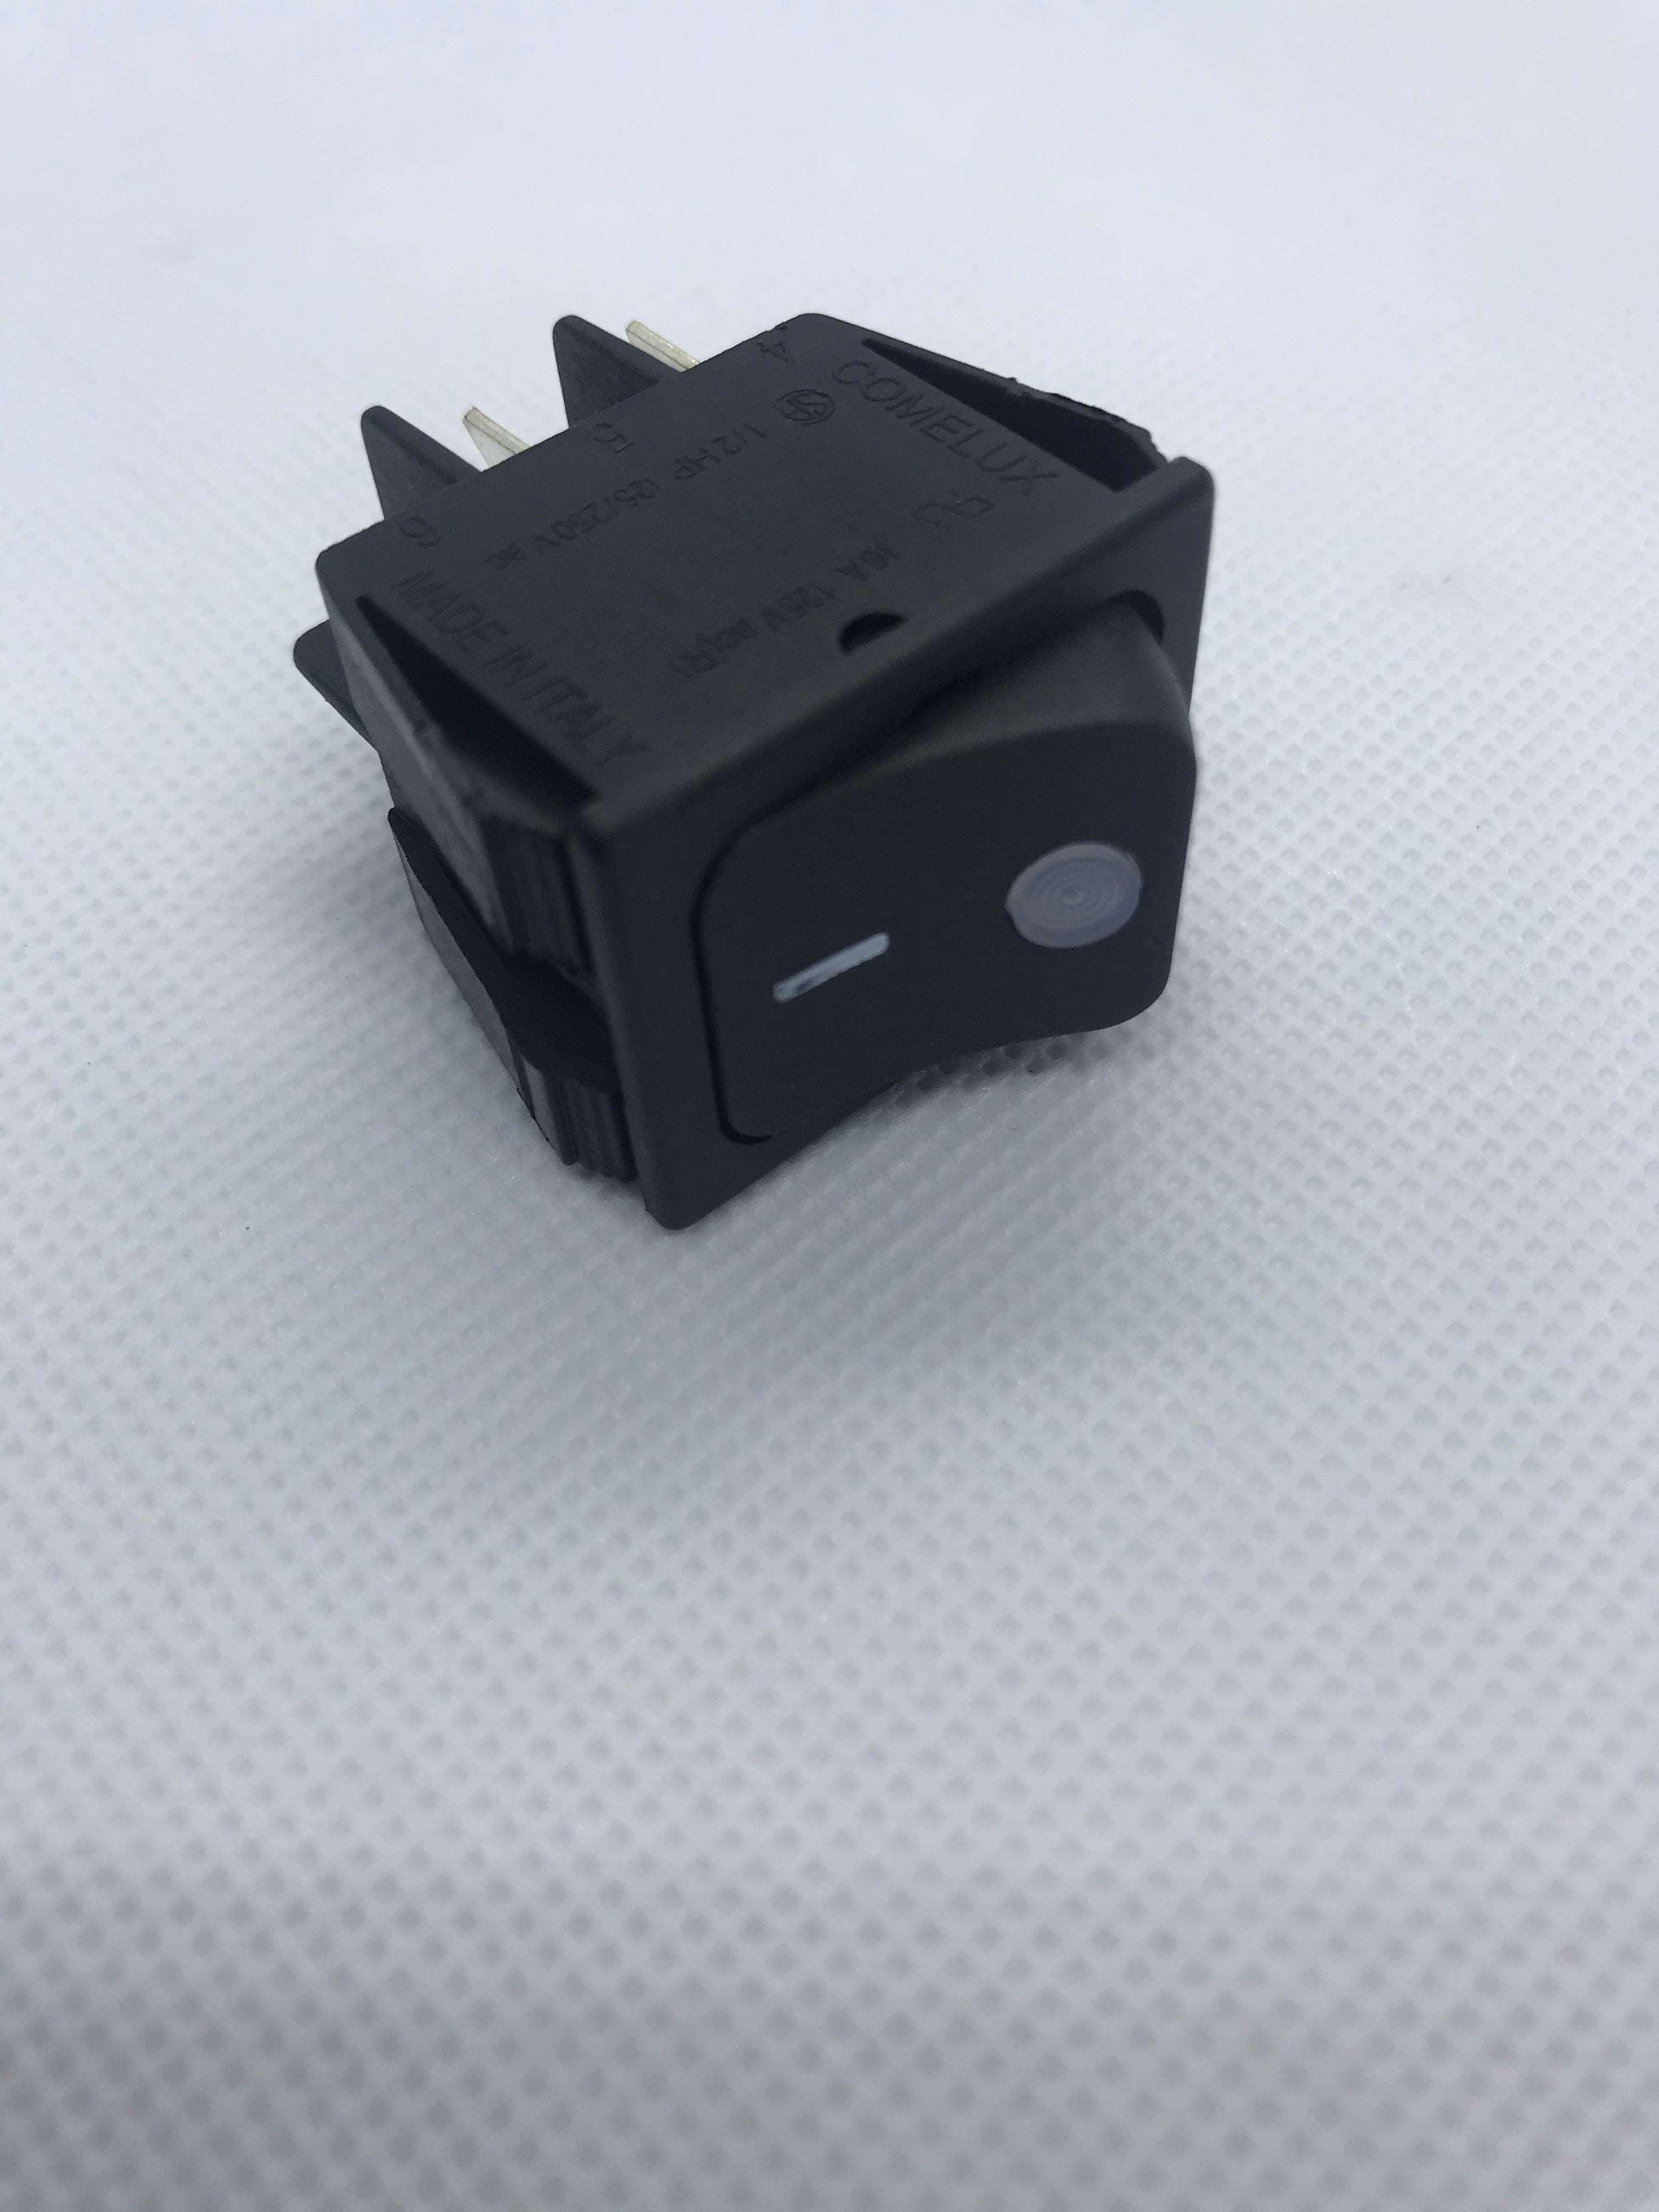 RMOR040  Black switch for P120E, P110G